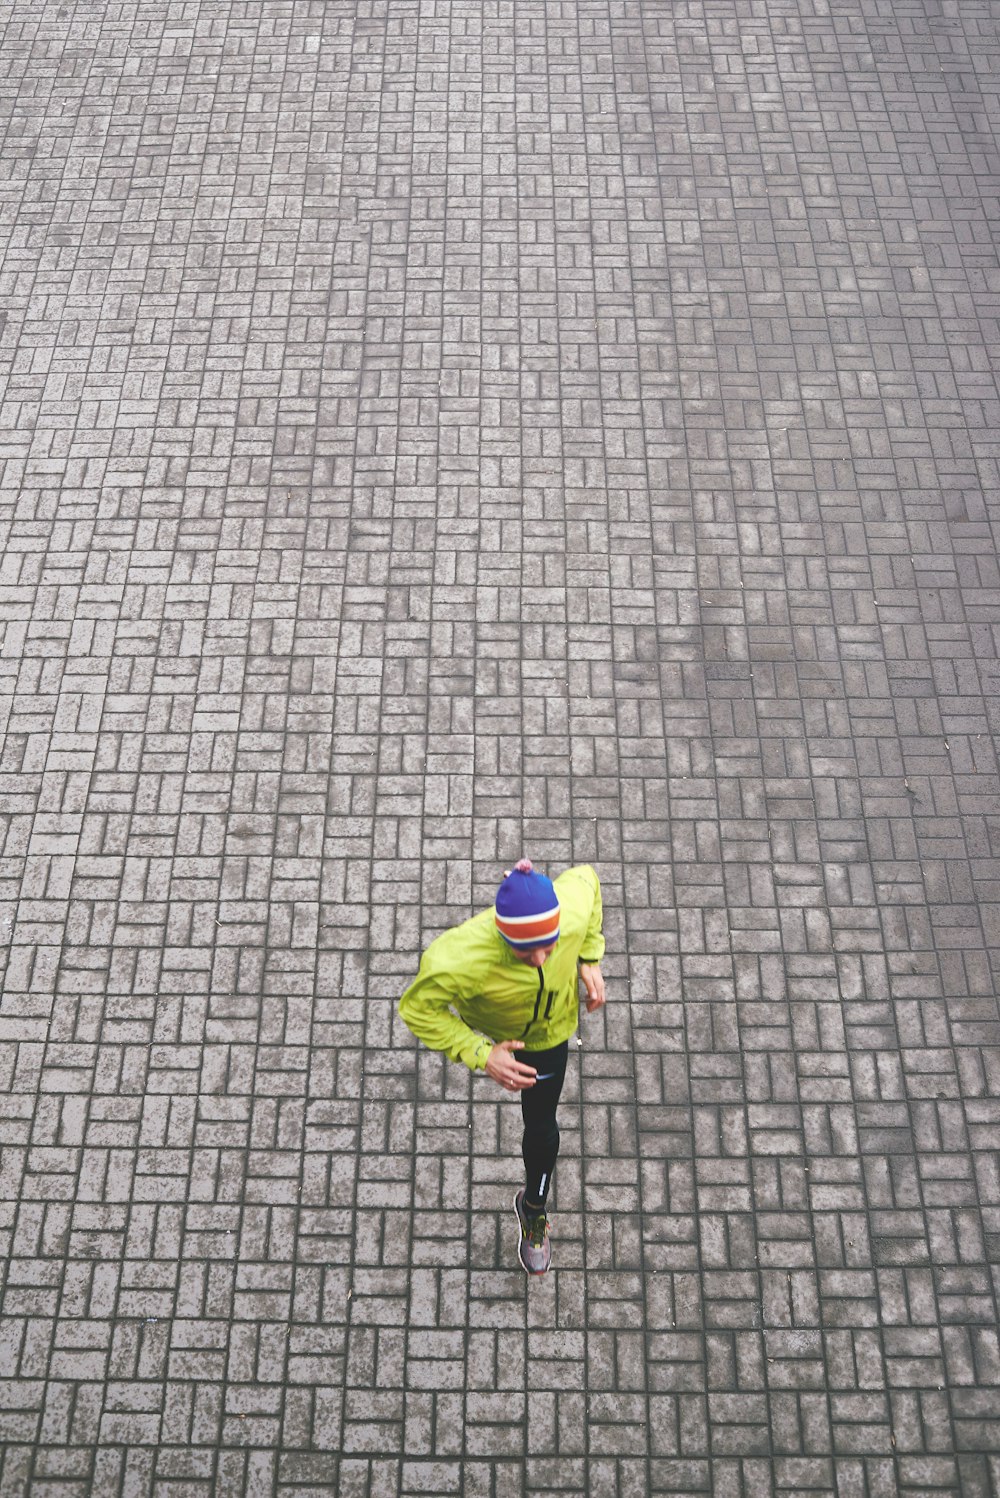 녹색 트랙 재킷을 입은 사람 달리기